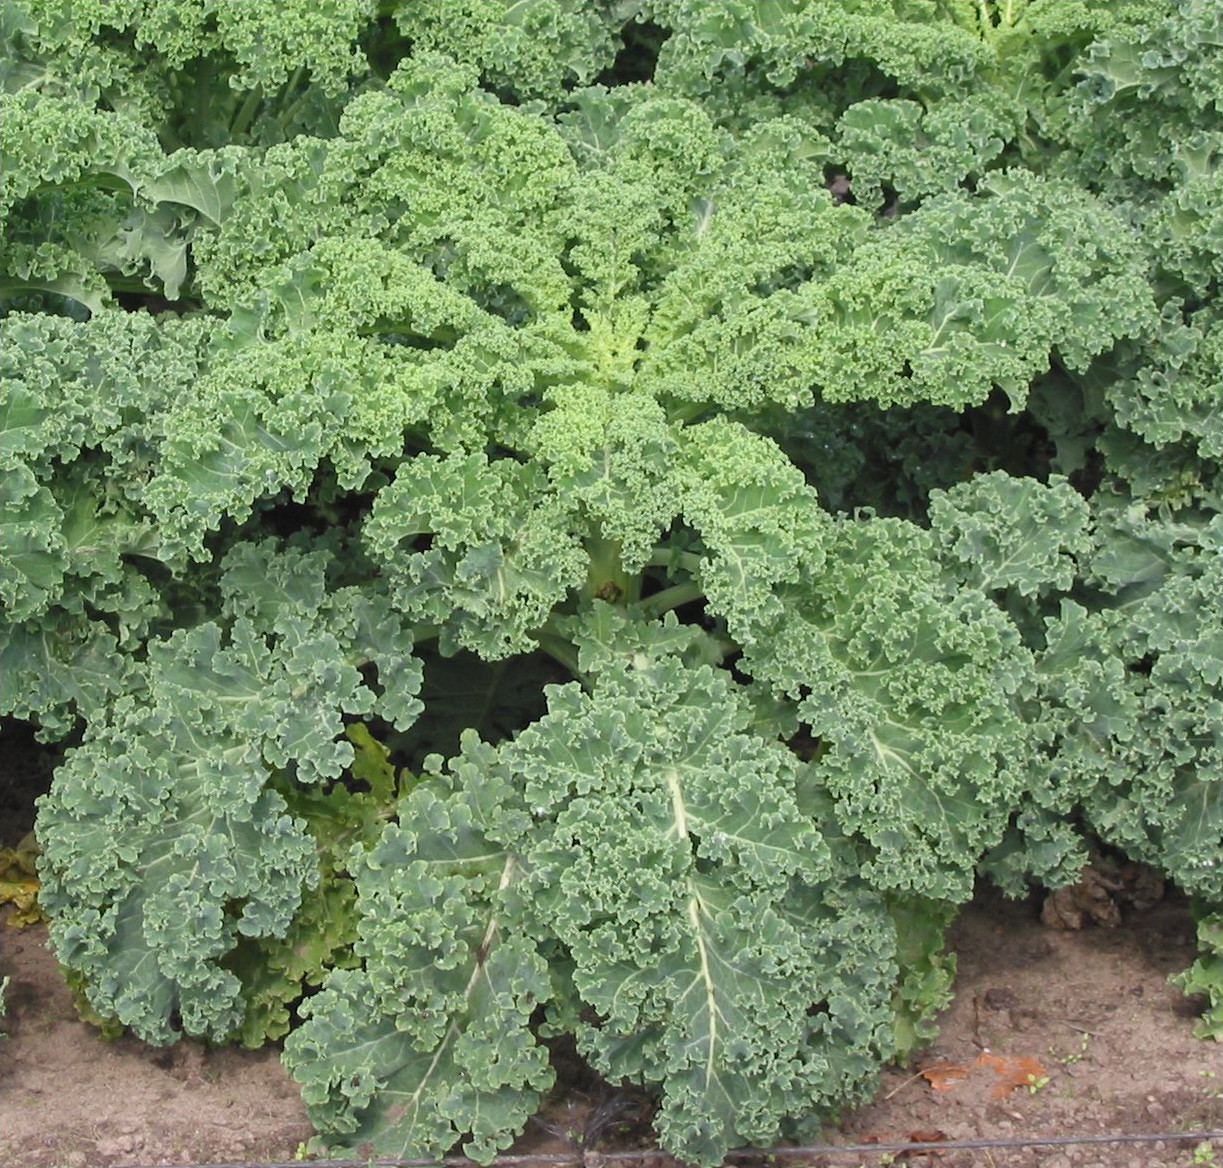 Kale (Wikipedia file by Rasbak)